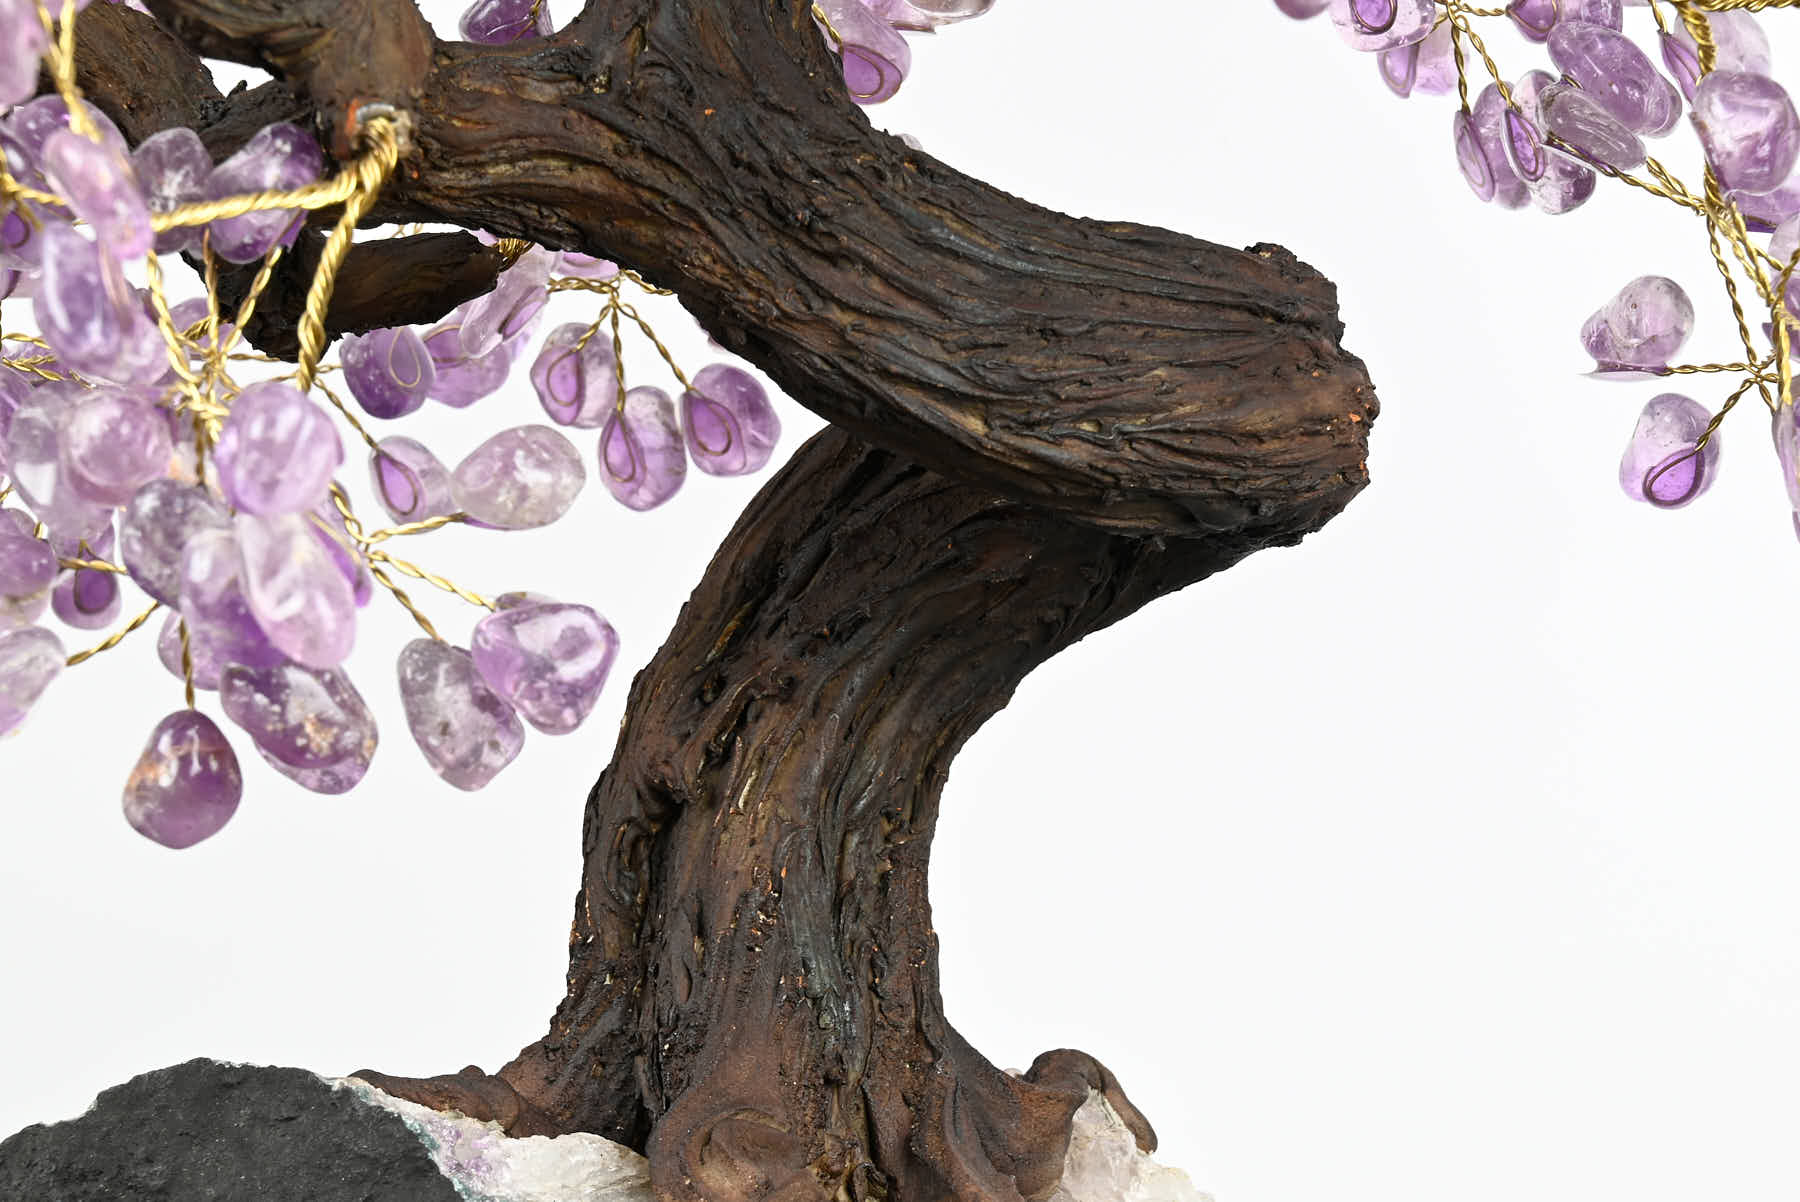 Handmade 69cm Tall Gemstone Tree with Amethyst base and 720 Amethyst gems - #TRAMET-64001